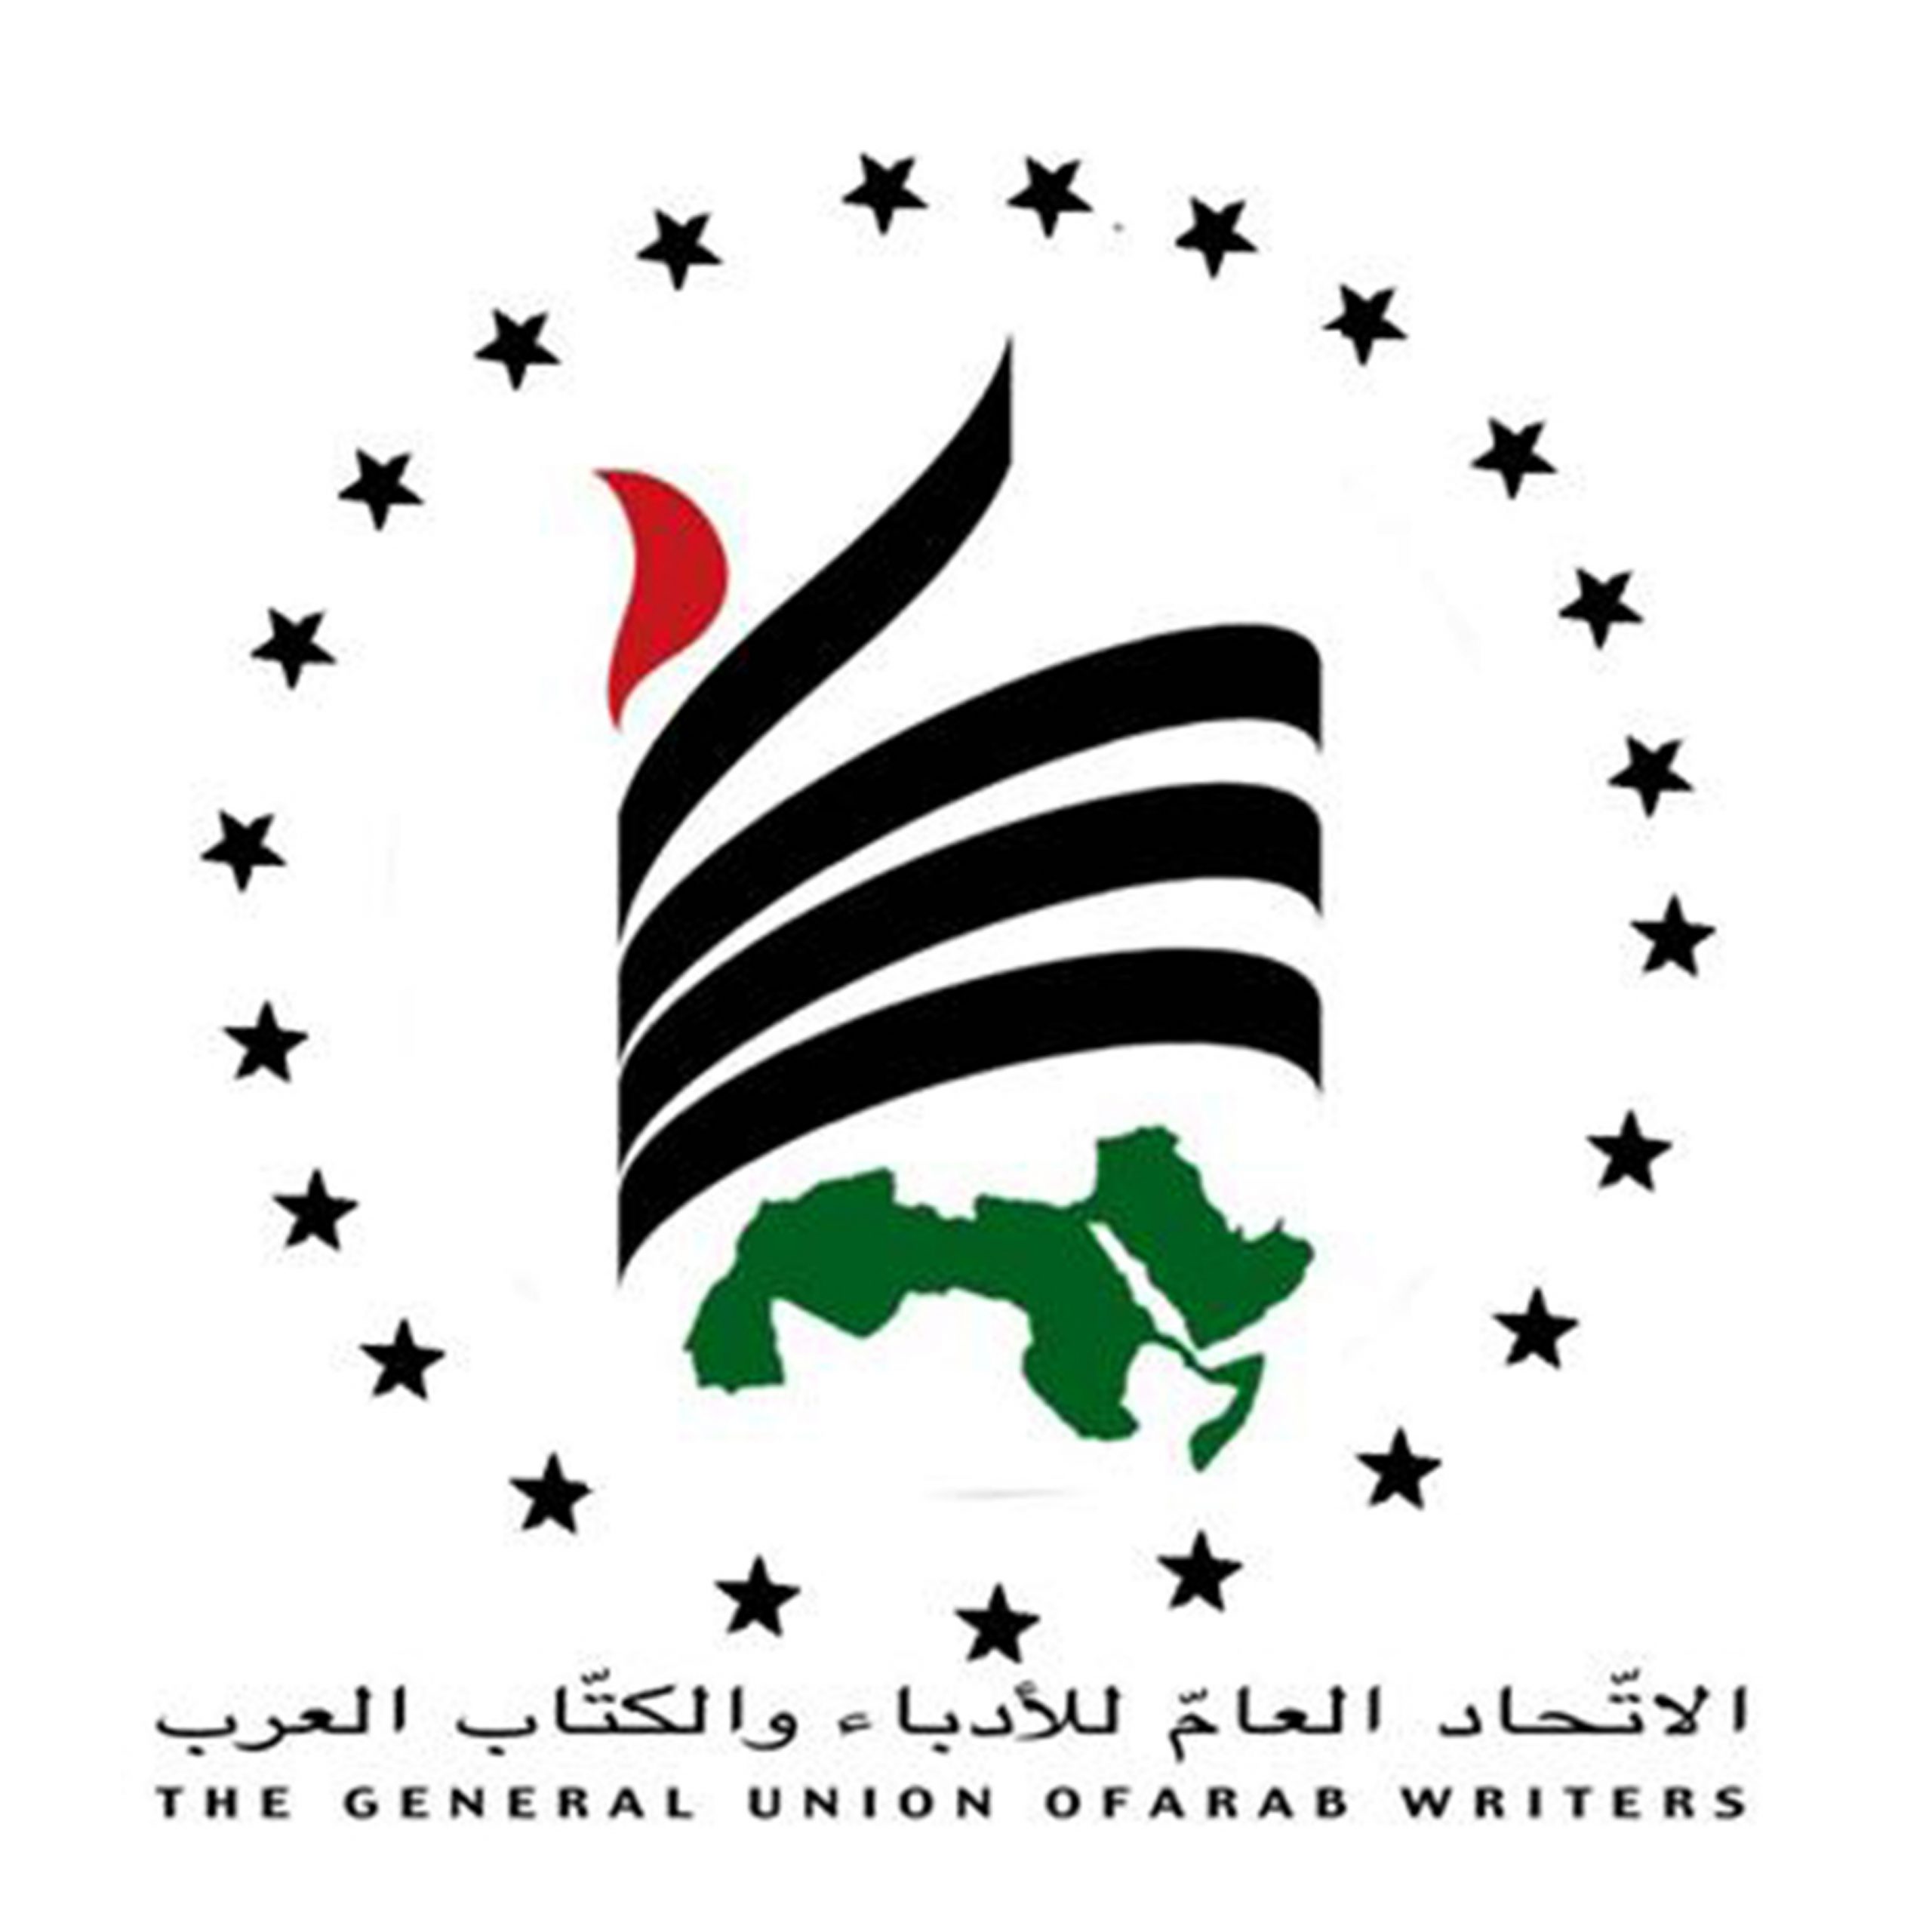 لوجو الاتحاد العام للأدباء والكتاب العرب1712062627 scaled